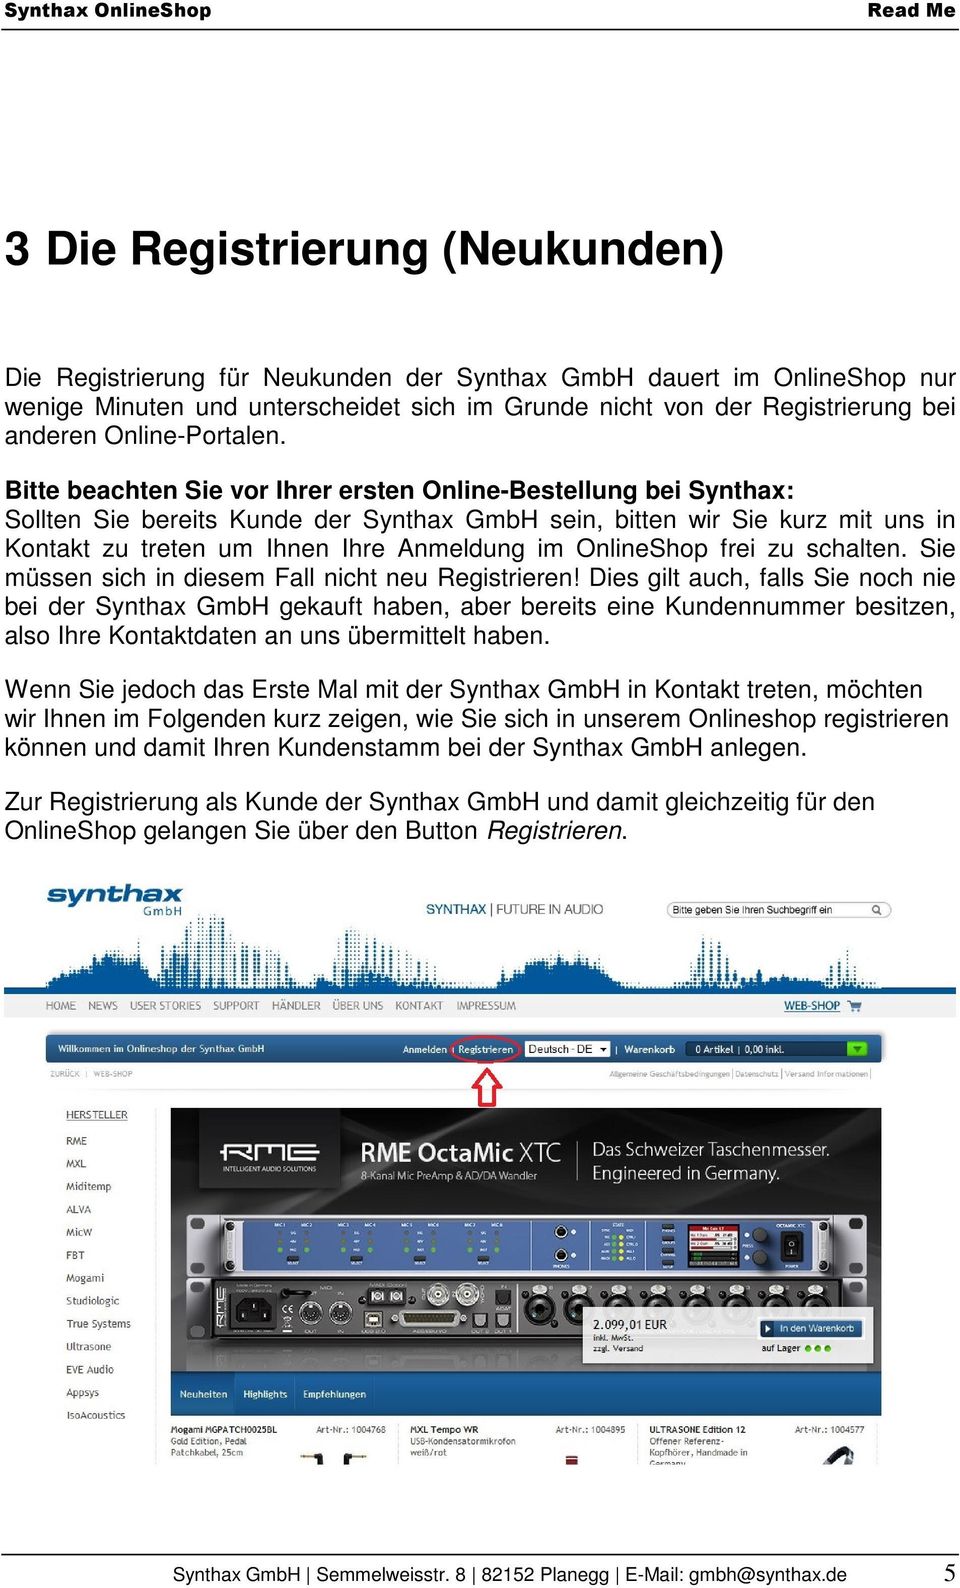 Bitte beachten Sie vor Ihrer ersten Online-Bestellung bei Synthax: Sollten Sie bereits Kunde der Synthax GmbH sein, bitten wir Sie kurz mit uns in Kontakt zu treten um Ihnen Ihre Anmeldung im